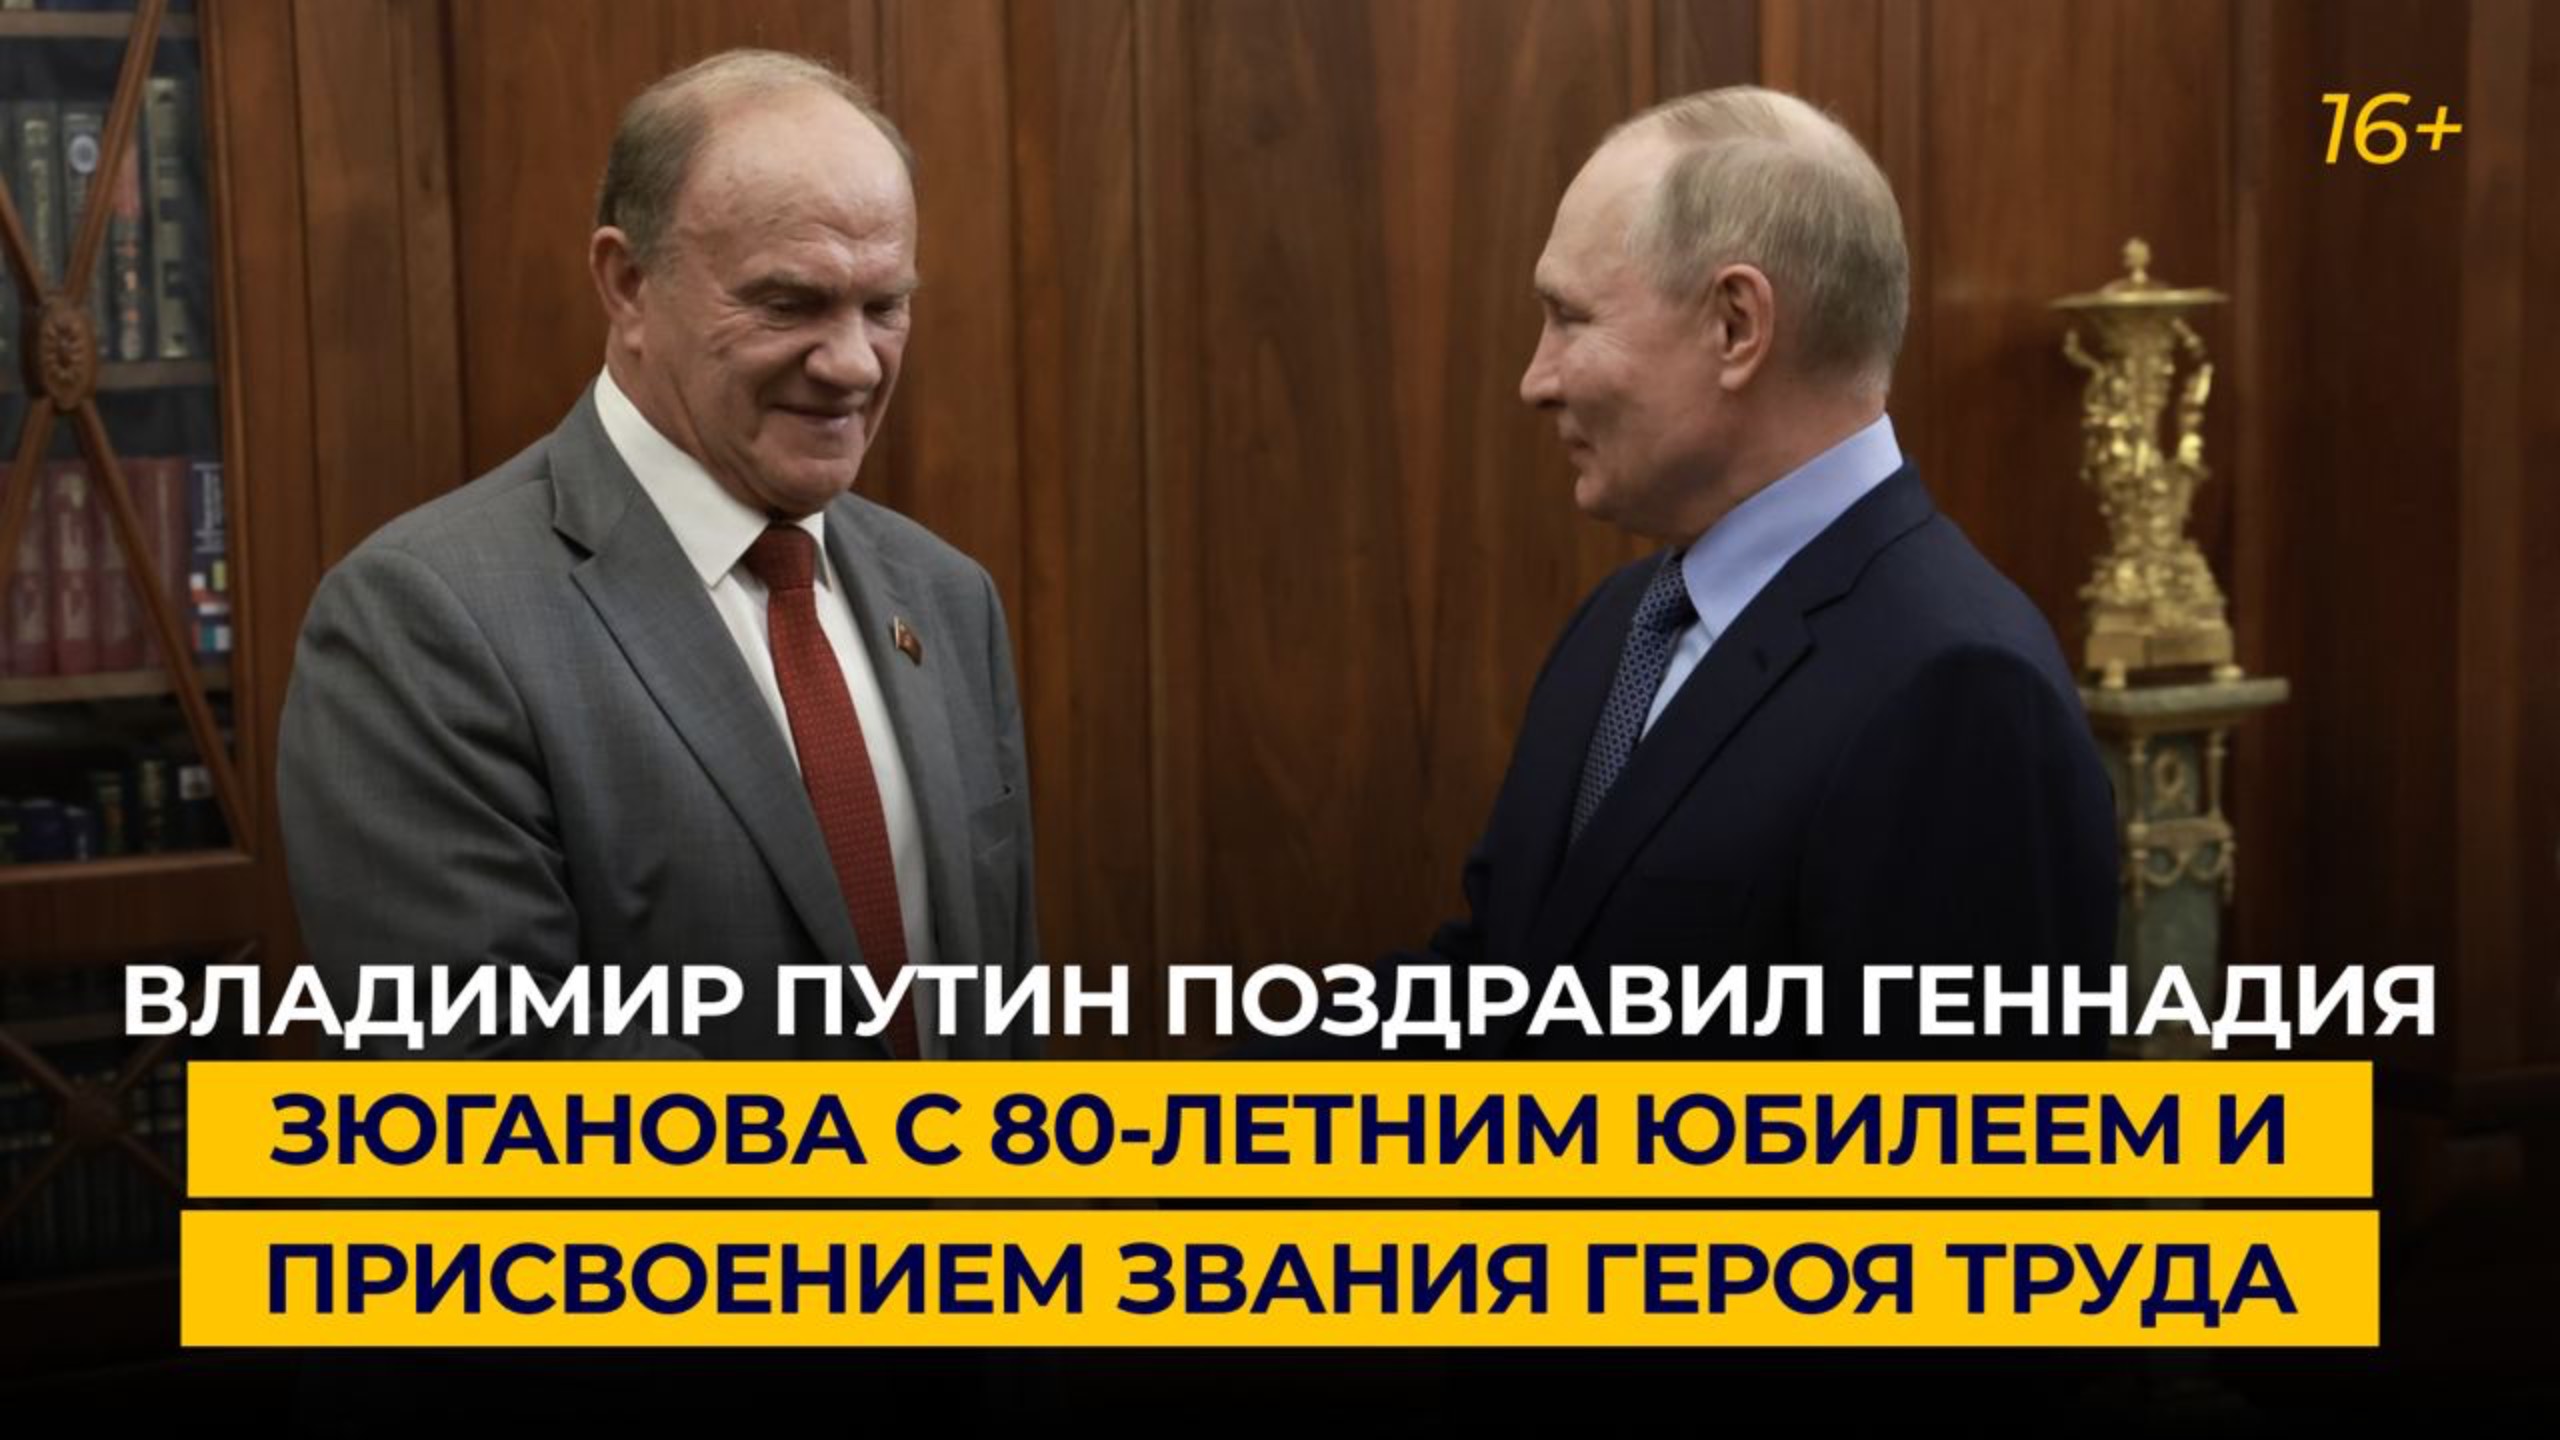 Владимир Путин поздравил Геннадия Зюганова с 80-летием и присвоением звания Героя Труда